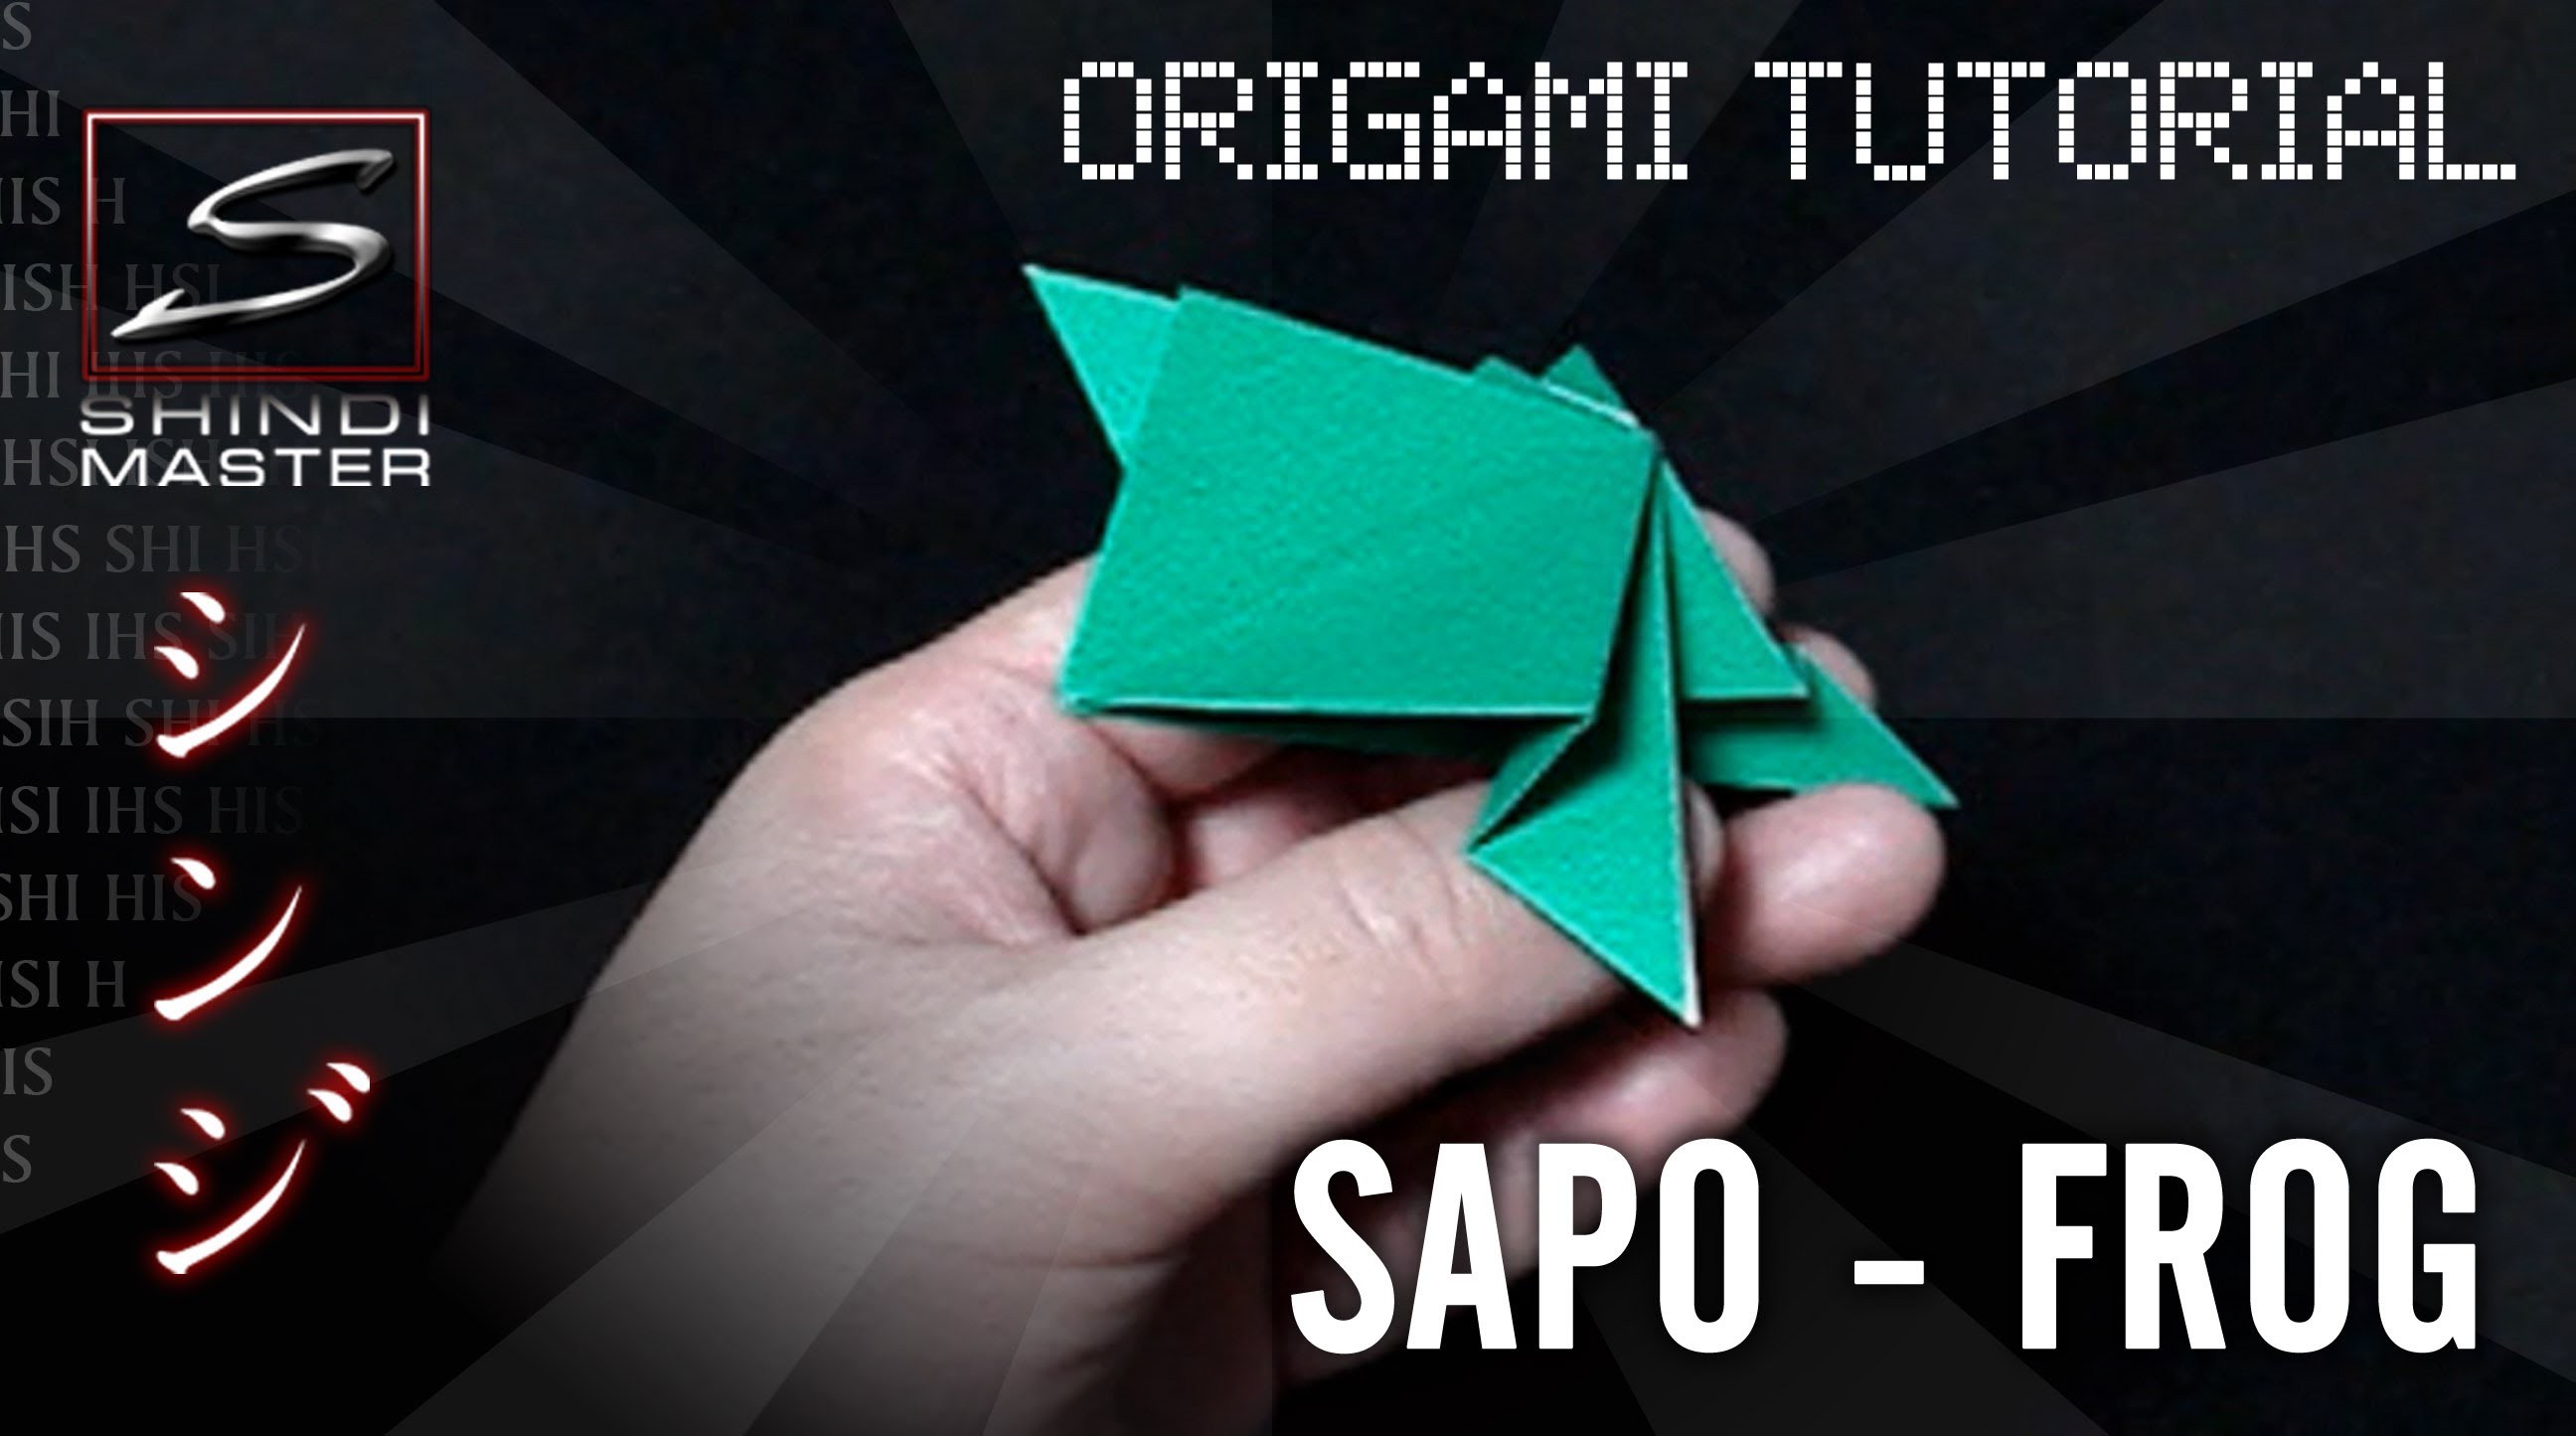 Aprenda fazer um Sapo em Origami - Frog Origami Tutorial - SHINDIMASTER